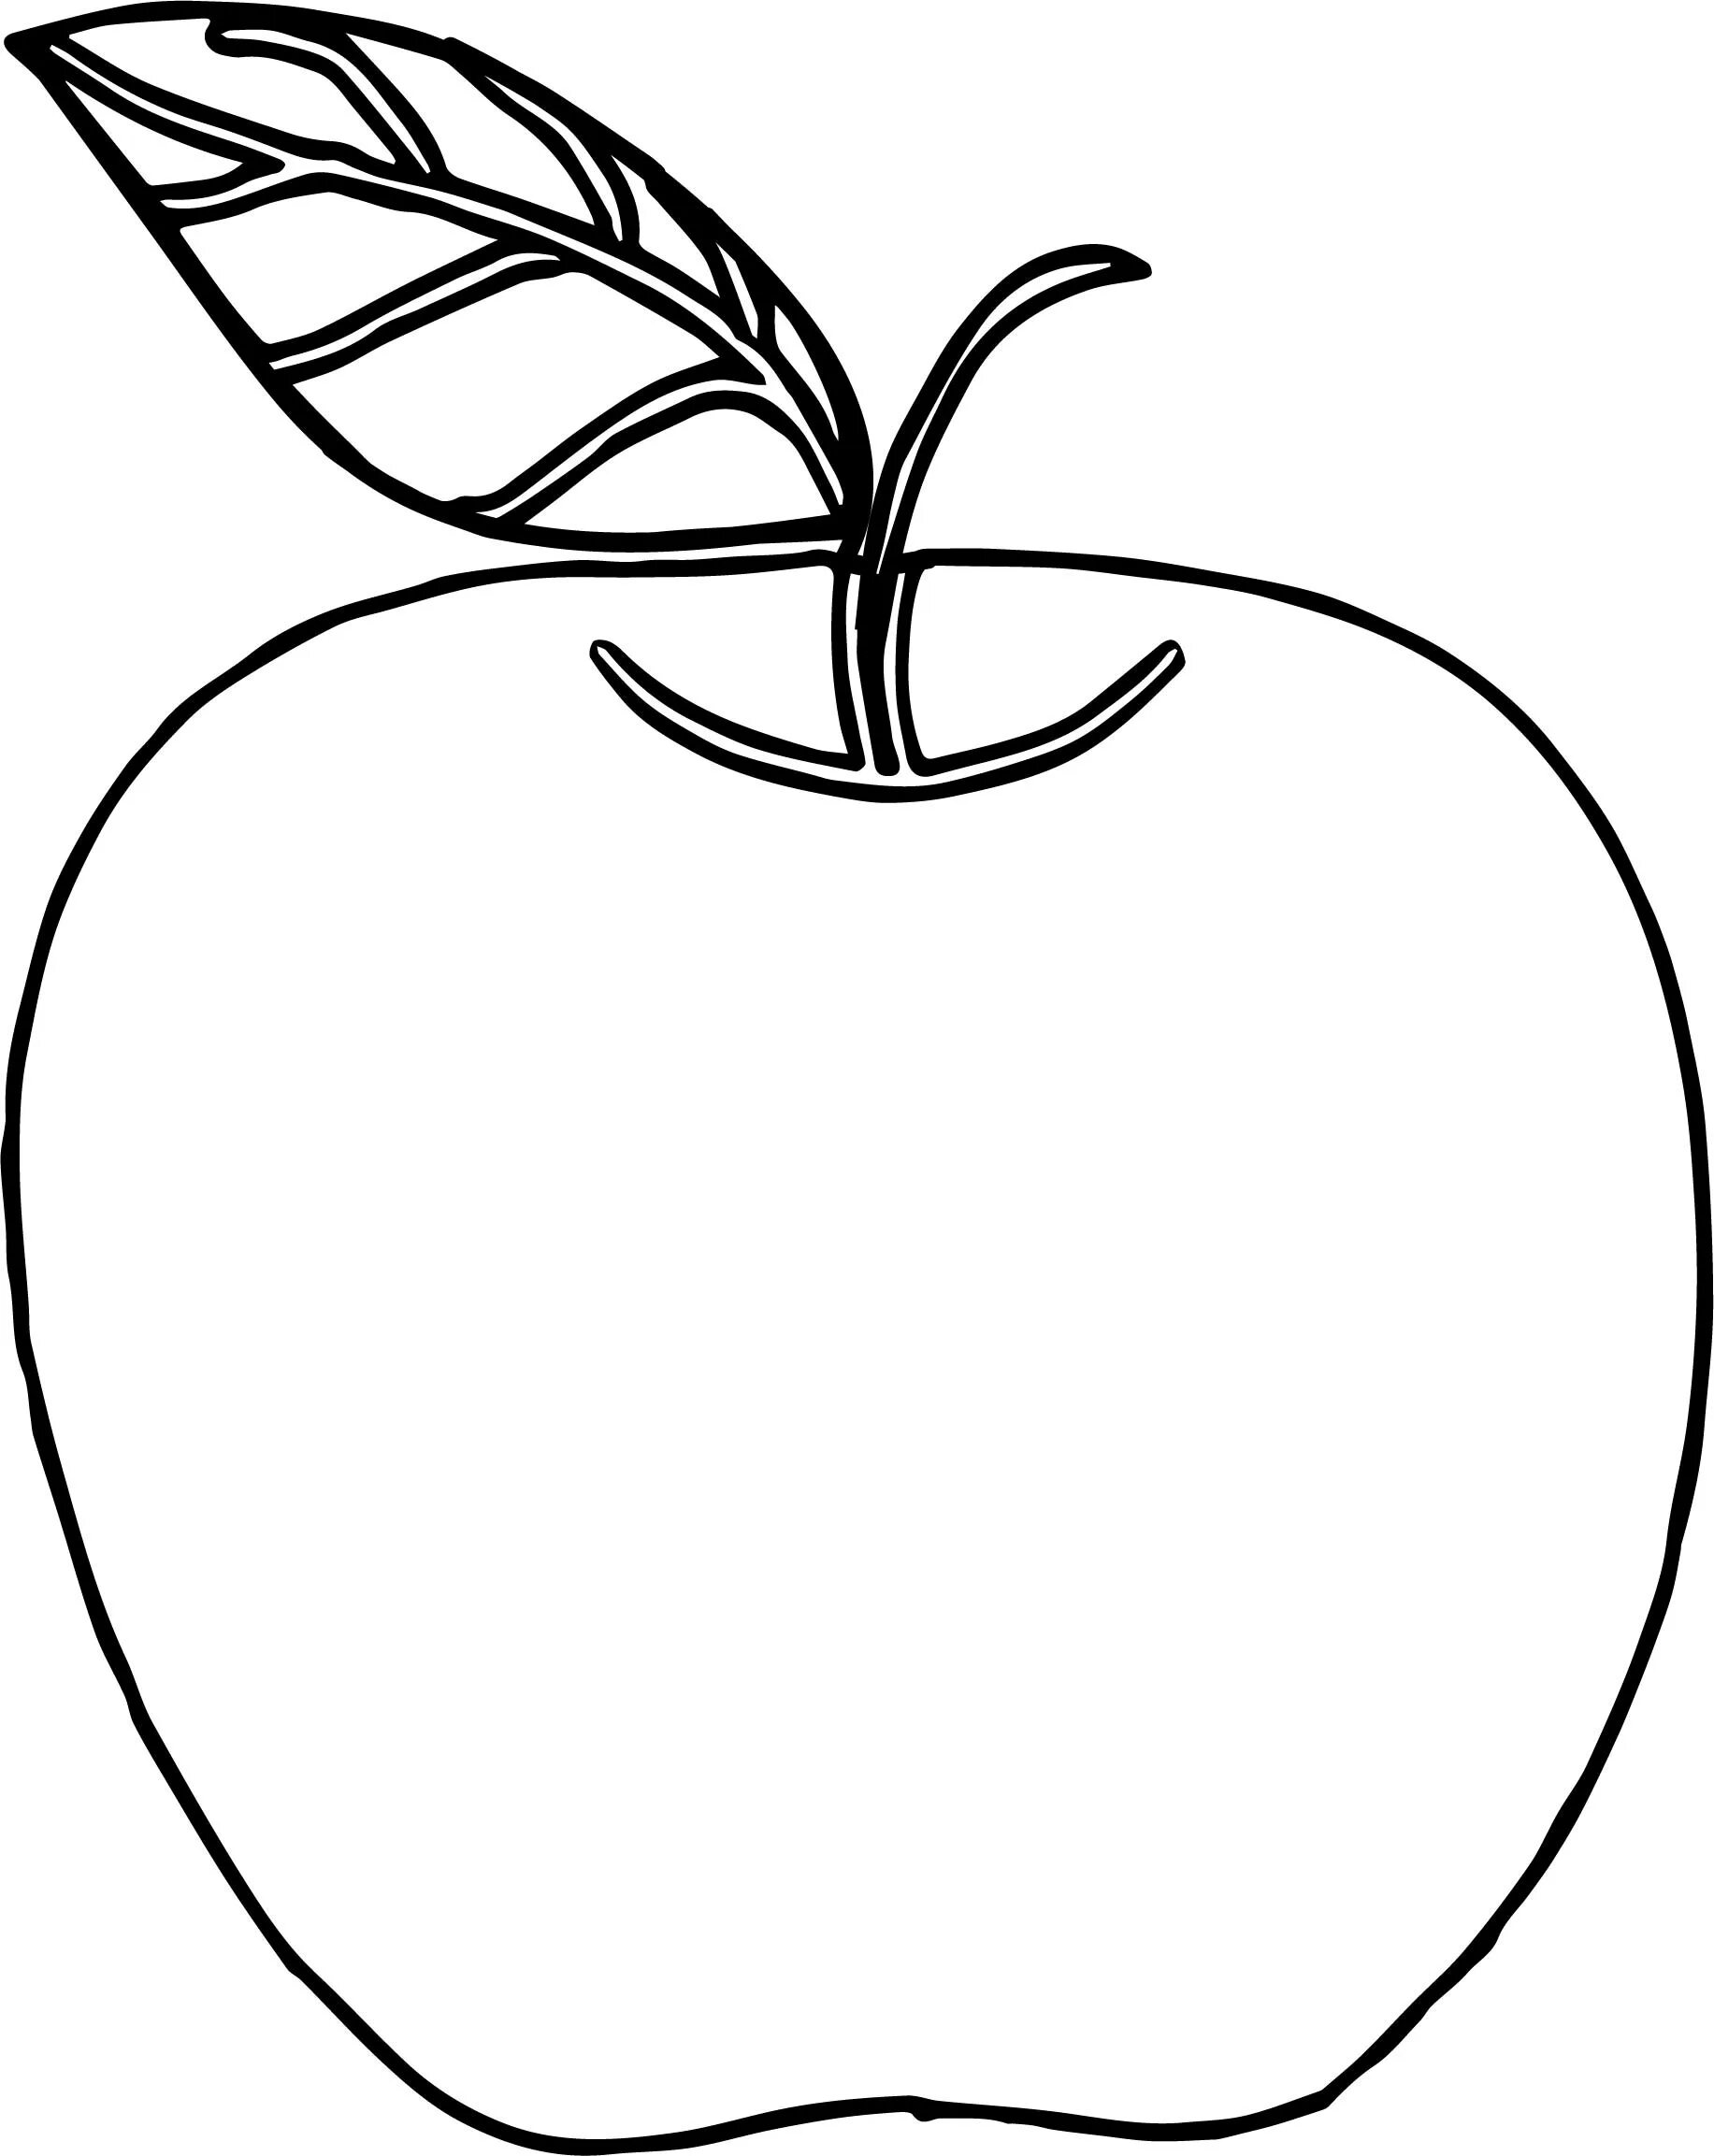 Раскраска 3 яблока. Яблоко раскраска. Яблоко раскраска для детей. Яблоко раскраска для малышей. Яблоко трафарет.